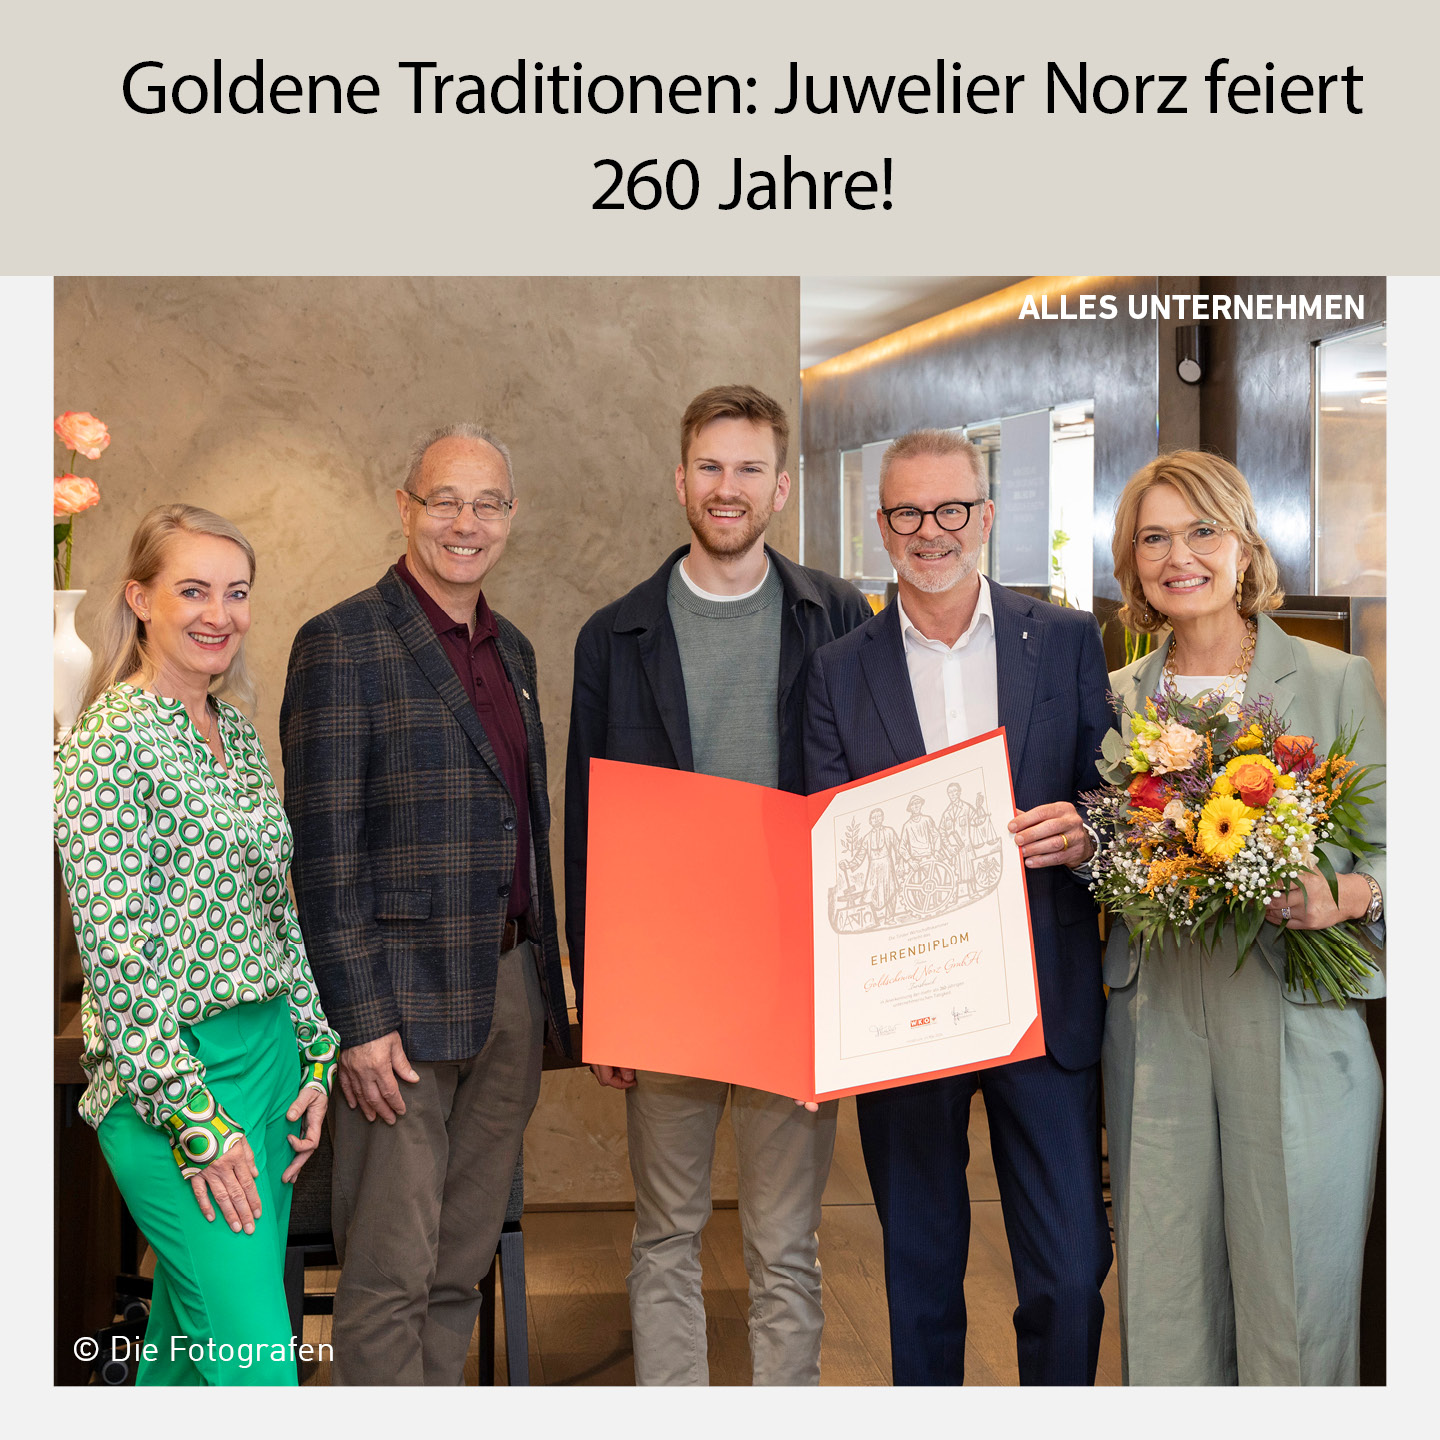 Christoph und Andrea Norz feiern 260-jähriges Jubiläum von Juwelier Norz in Innsbruck, zusammen mit Ehrengästen und einem Ehrenzertifikat, ausgezeichnet für herausragende Handwerkskunst